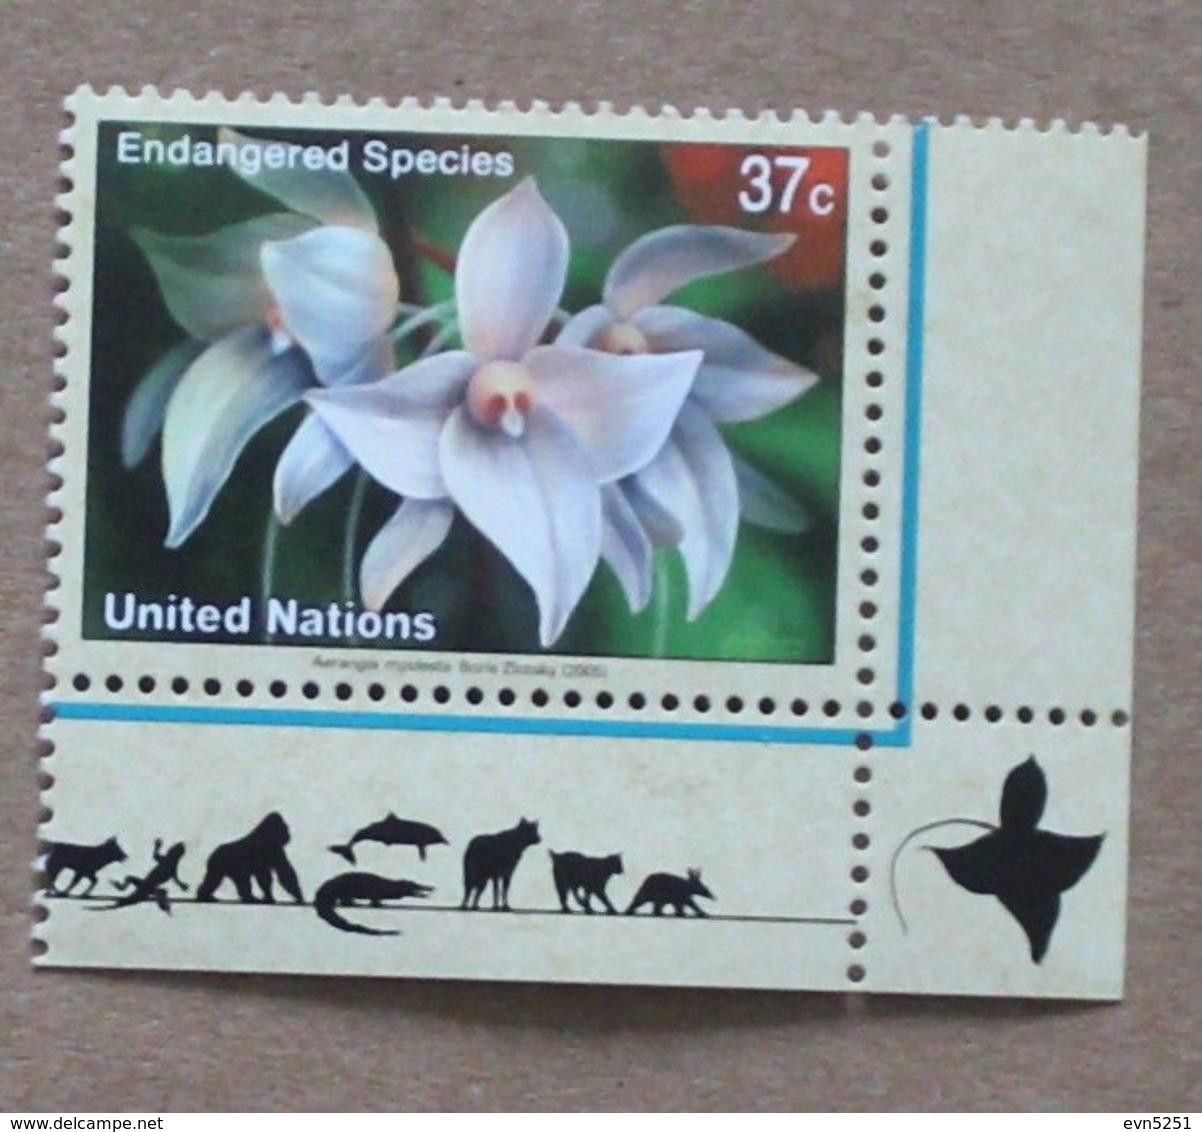 NY05-01 : Nations-Unies (New-York) / Protection De La Nature - Orchidée épiphyte "Aerangis Modesta" - Neufs